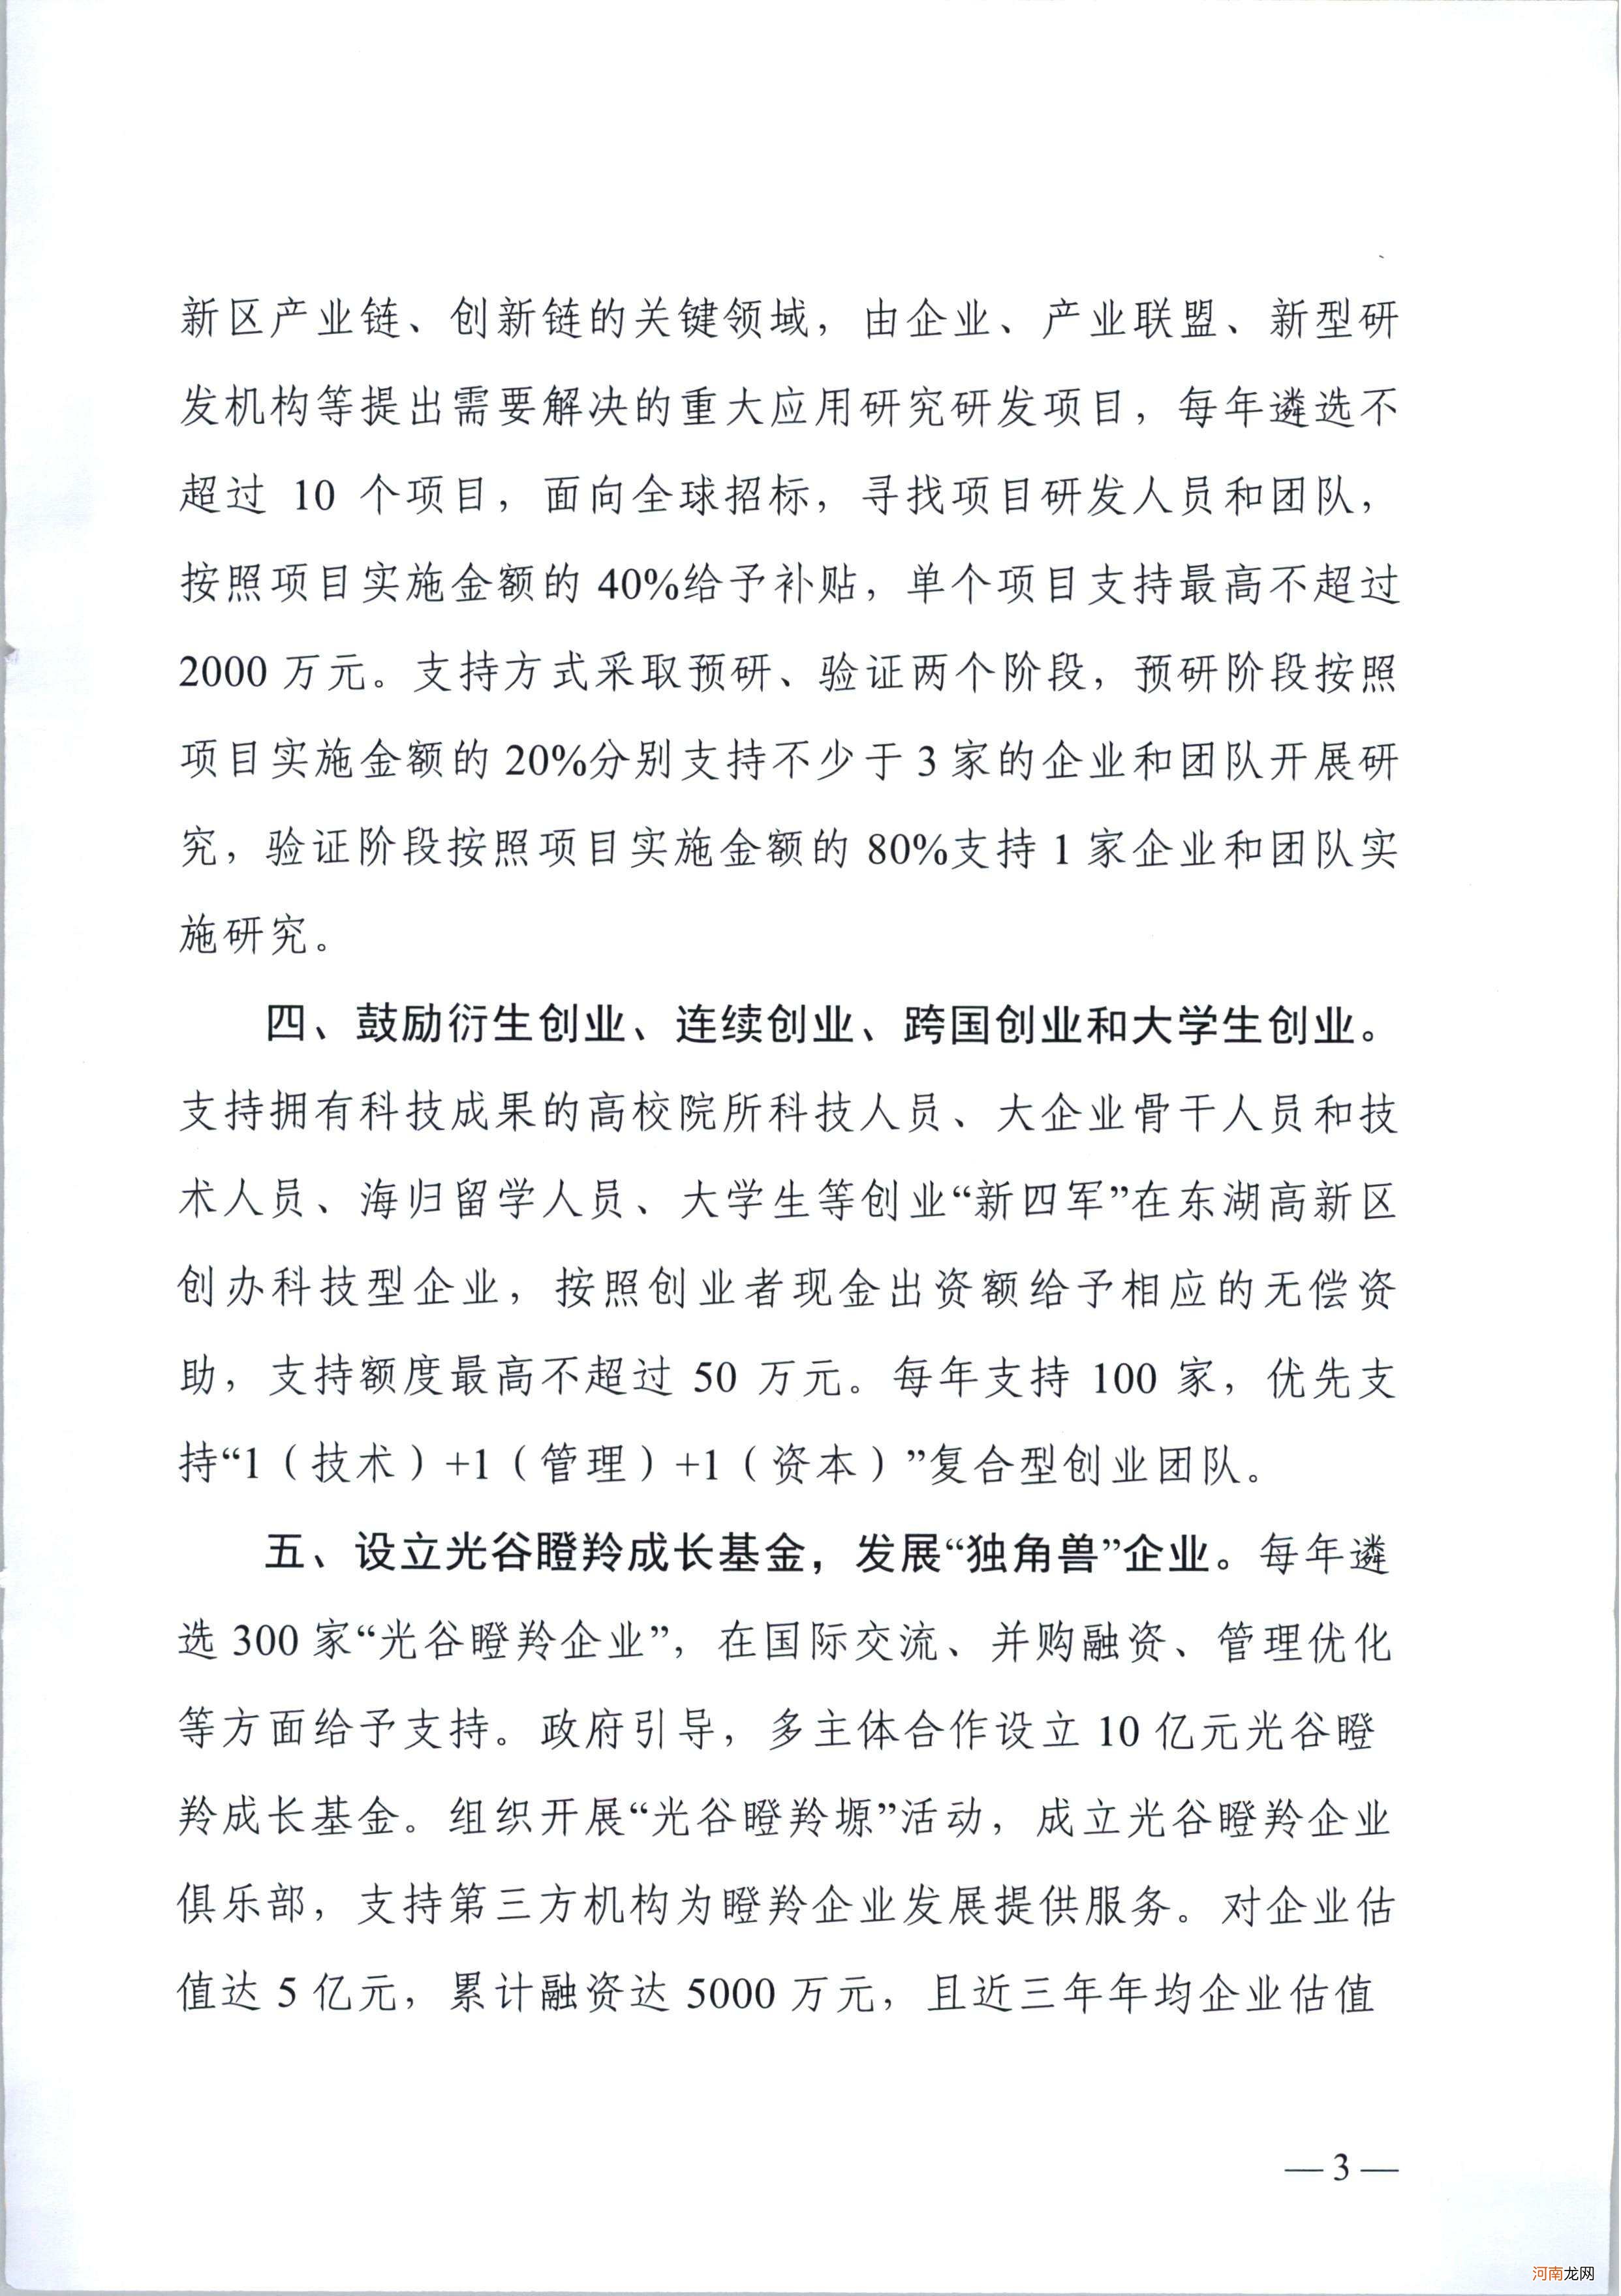 武汉创业扶持政策申请 上海创业扶持政策怎么申请